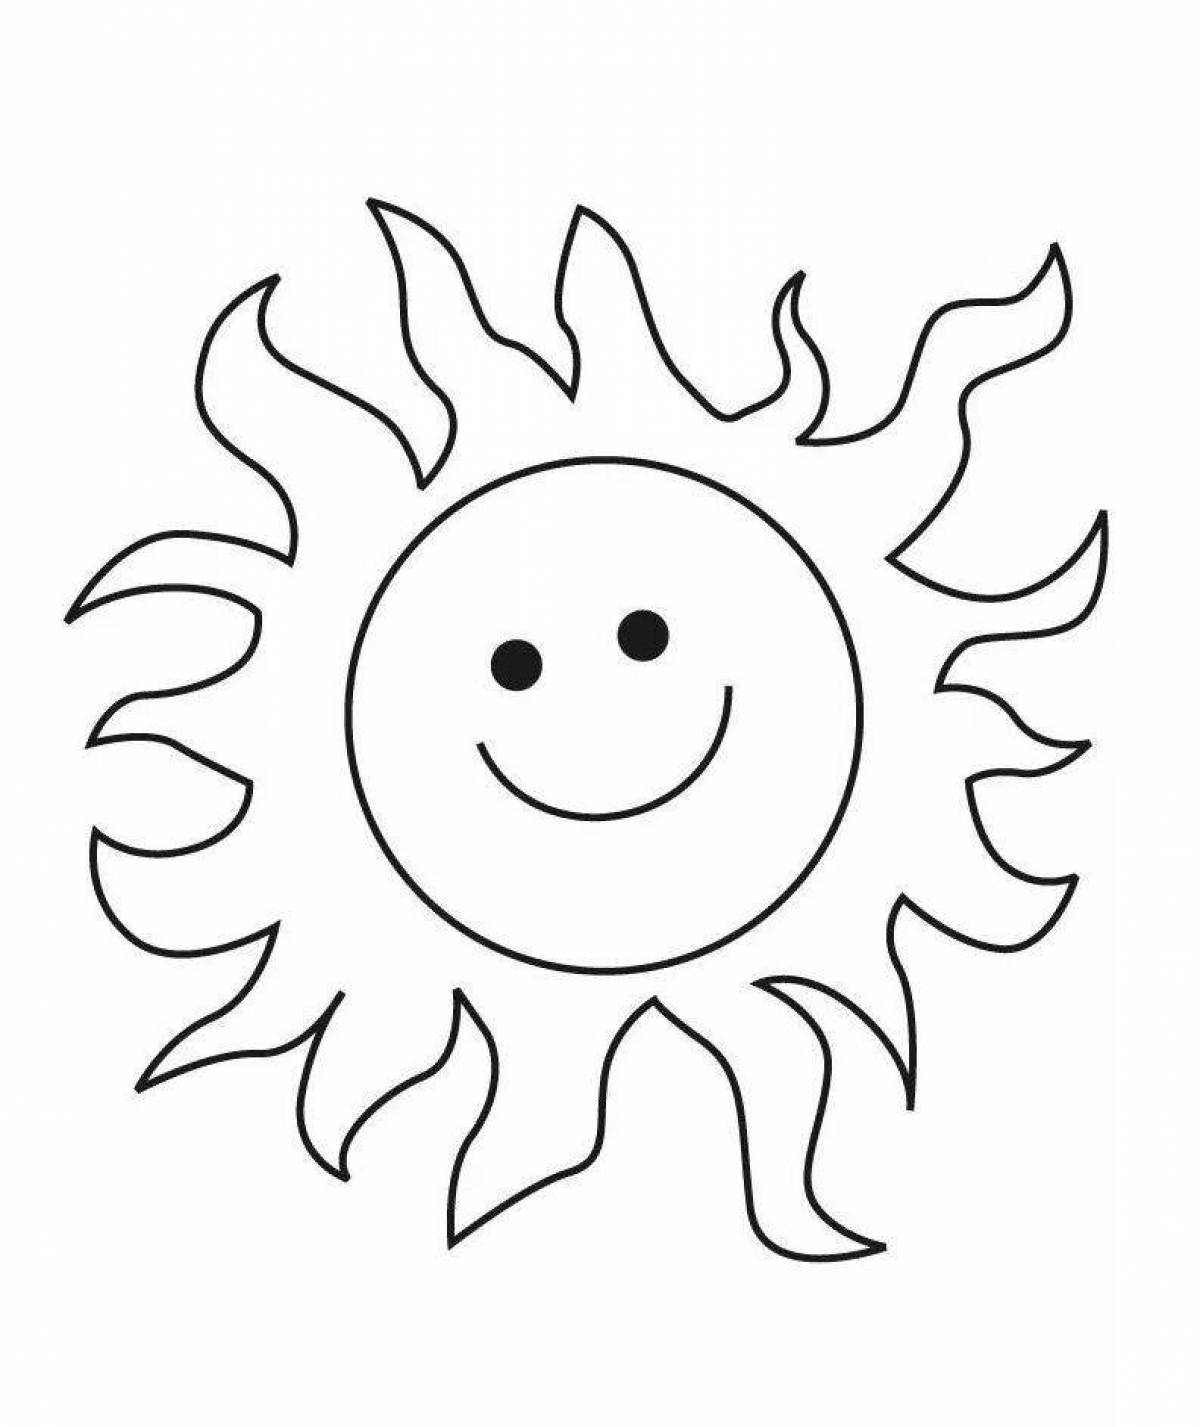 Освежающая раскраска солнечная картинка для детей